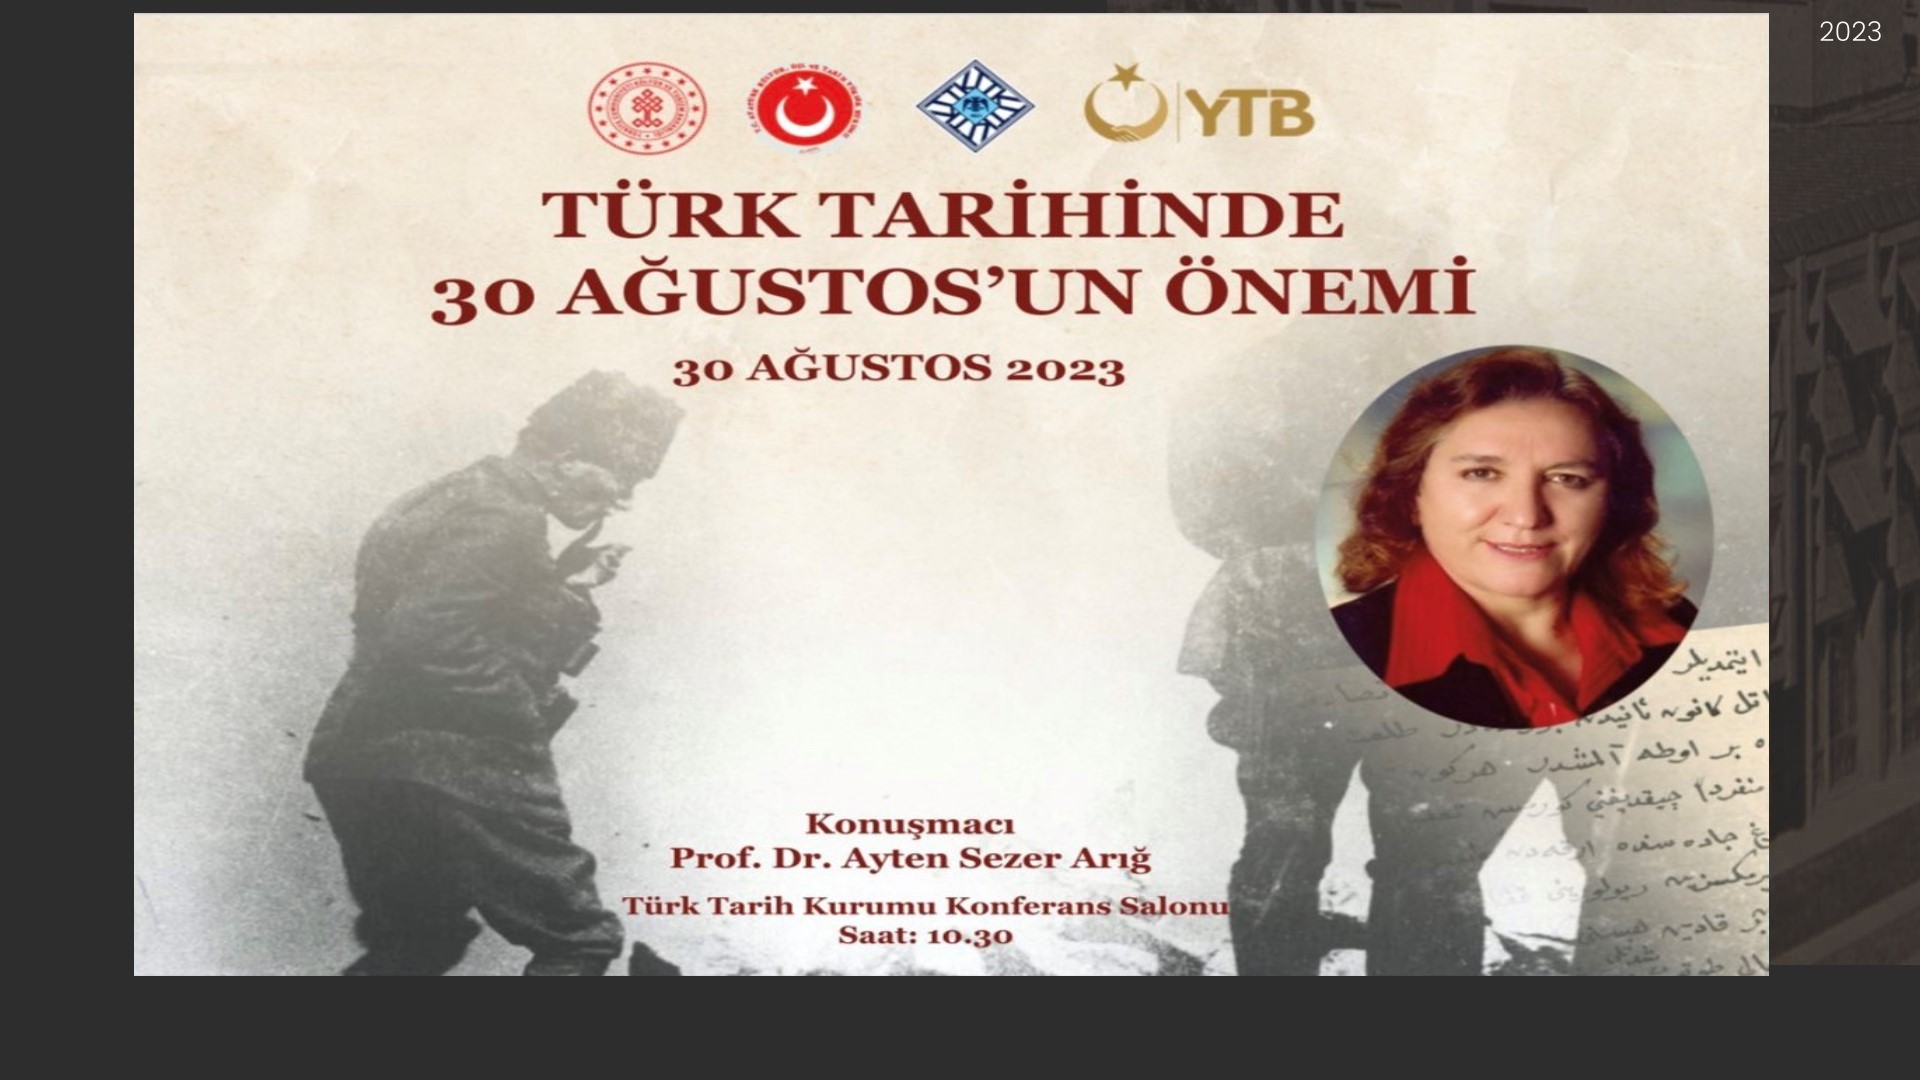  “Türk Tarihinde 30 Ağustos’un Önemi” konferansı düzenlenecektir.